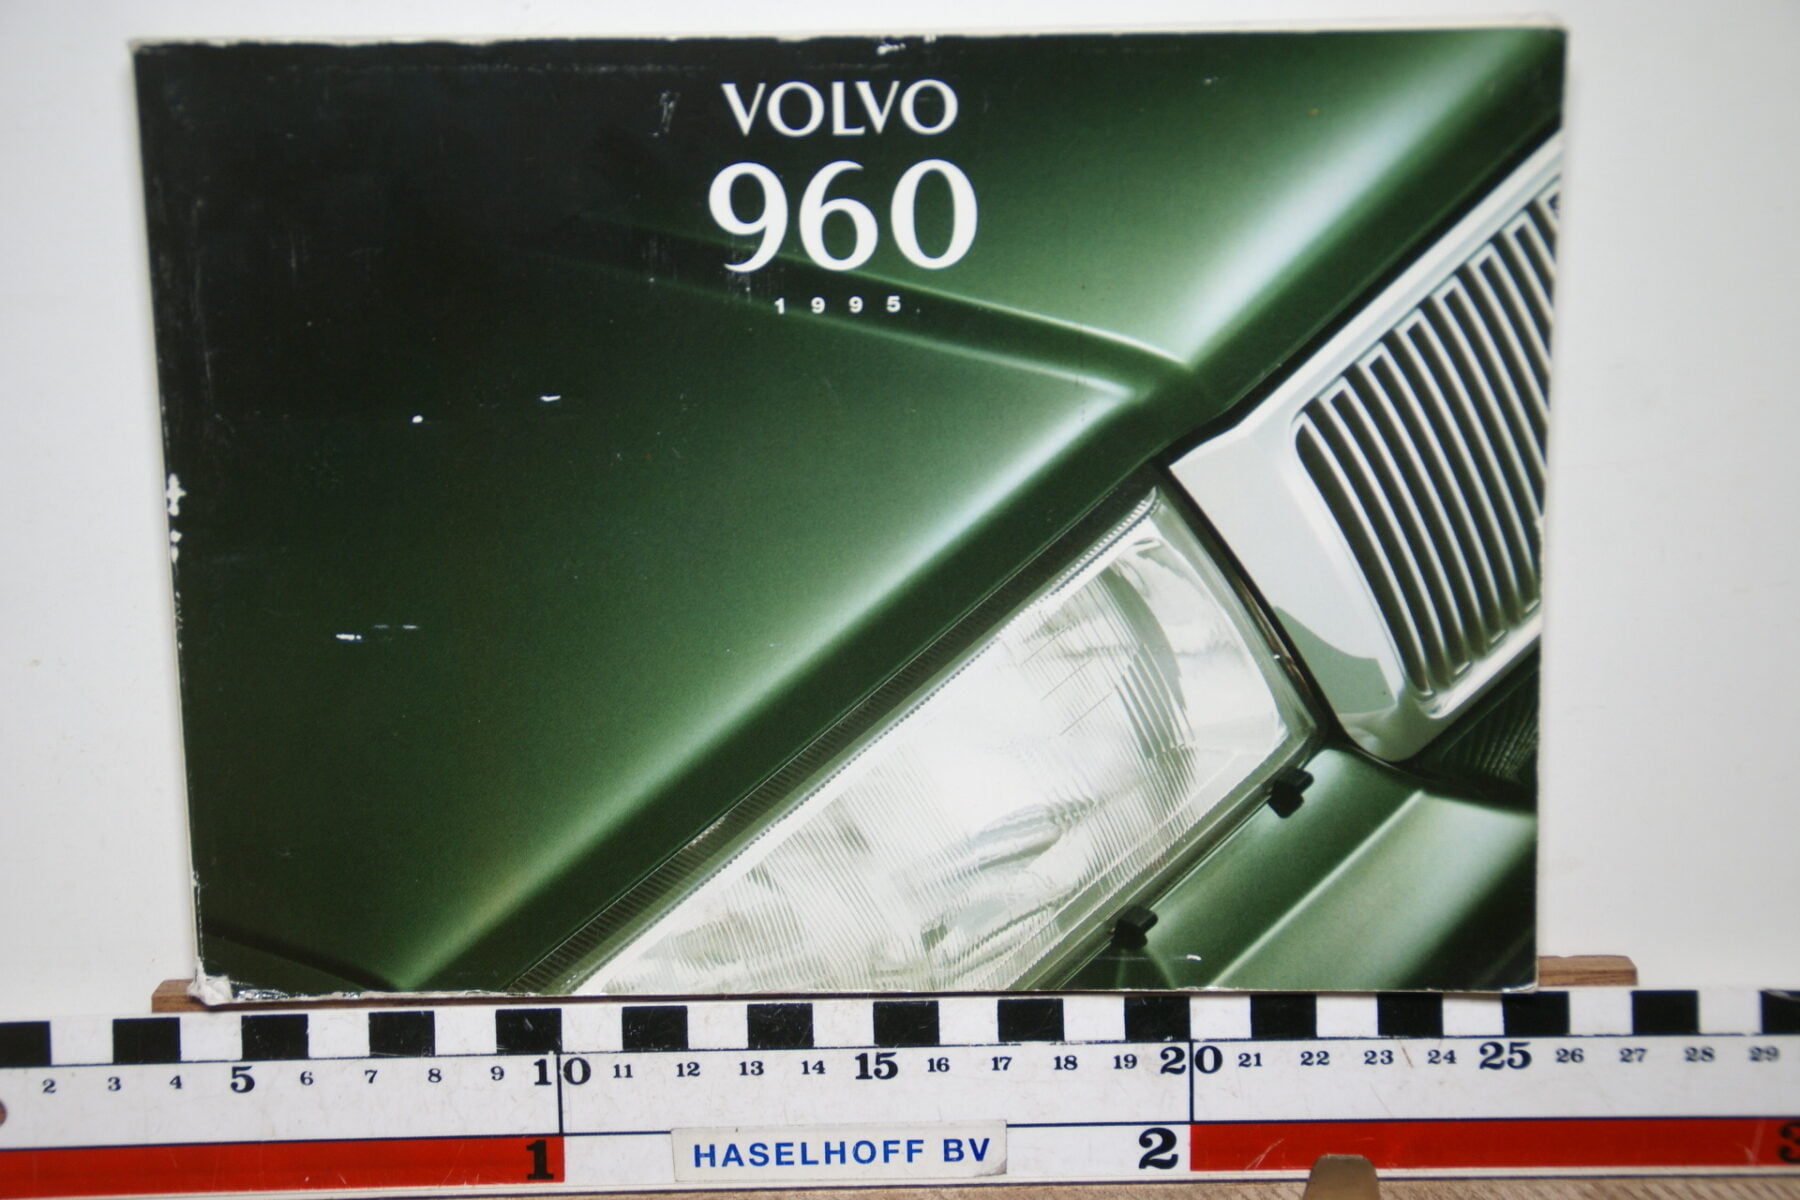 DSC02559 1995 instructieboekje Volvo 960 TP3612.1 1 van 2000